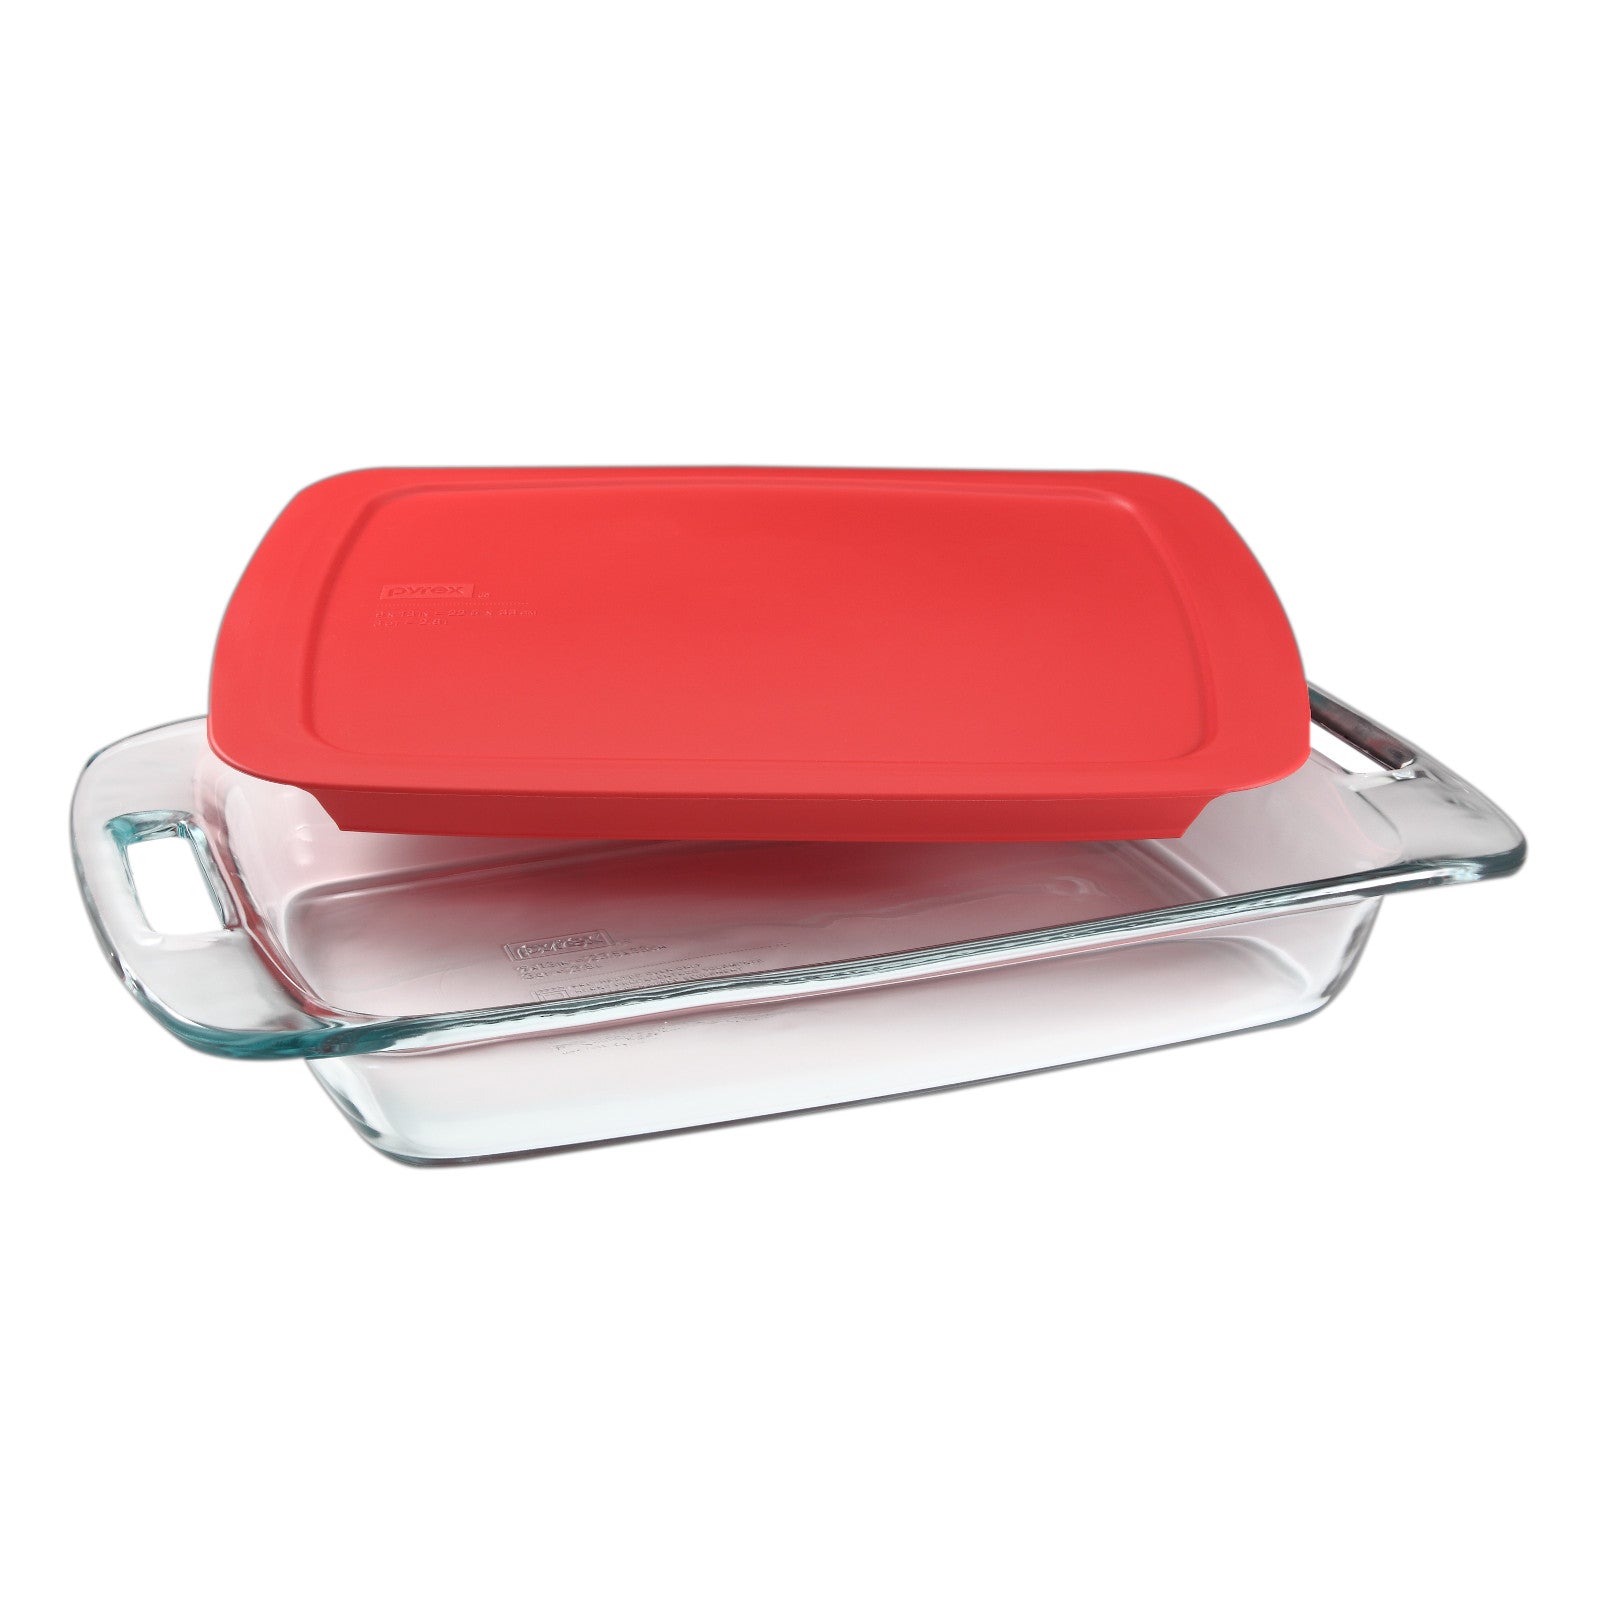 Fuente rectangular de vidrio con tapa Easy-Grab Pyrex 1.9 litros